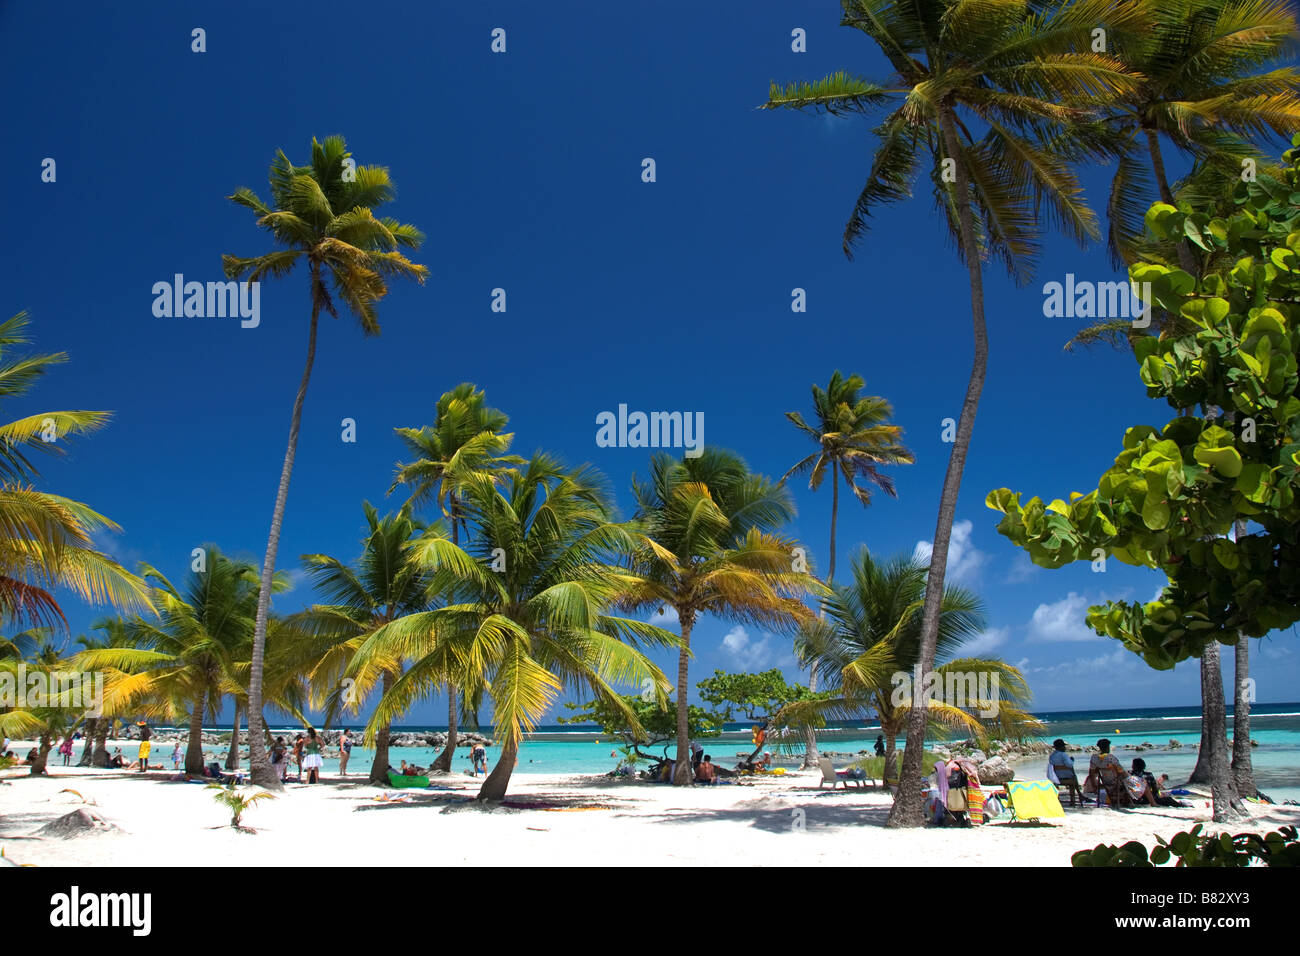 Guadalupe Antillas Francesas del Caribe Sainte Anne, playa de arena blanca, palmeras, relajarse, isla paraíso, cielo azul, vacaciones Foto de stock